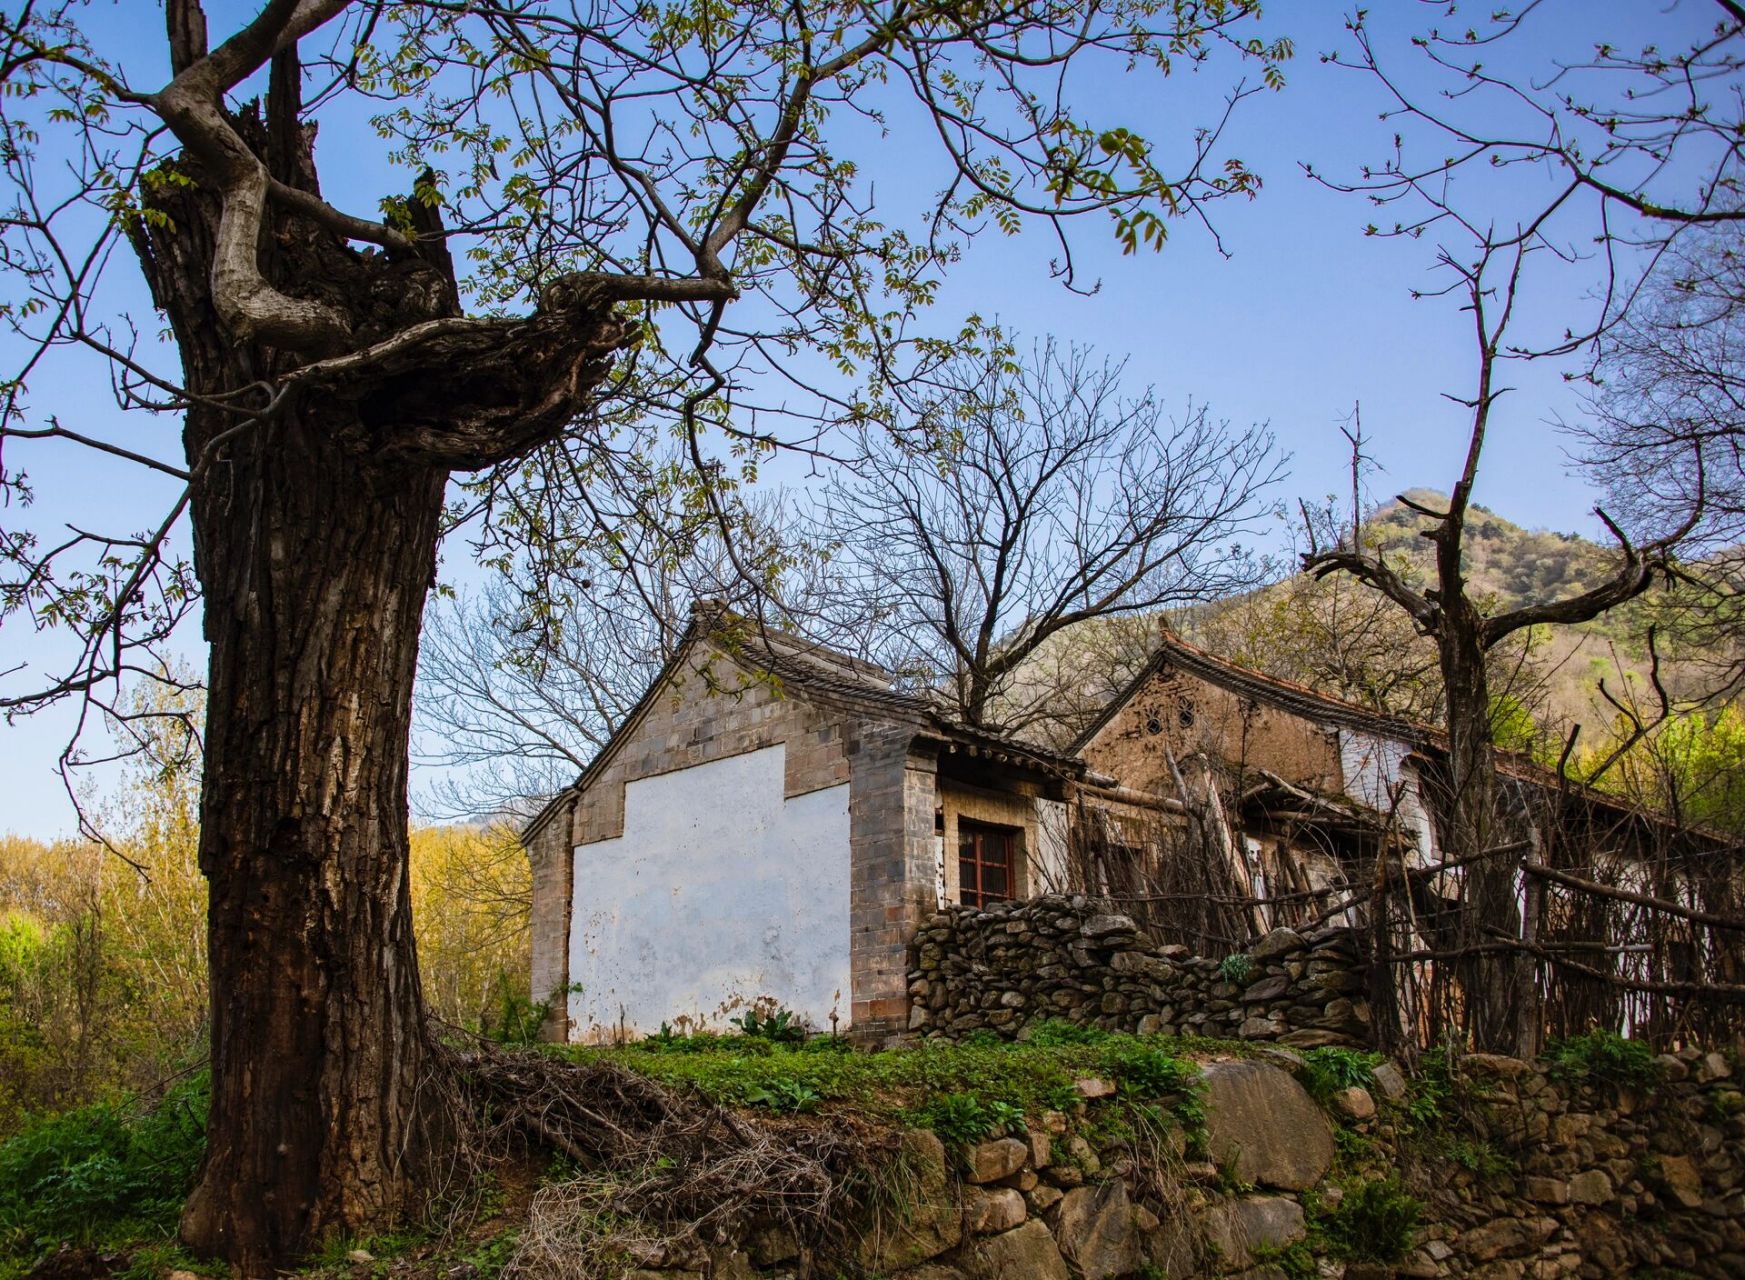 西安小众游绝佳地——秦岭脚下虎峪村       最美人间四月天,正是踏春